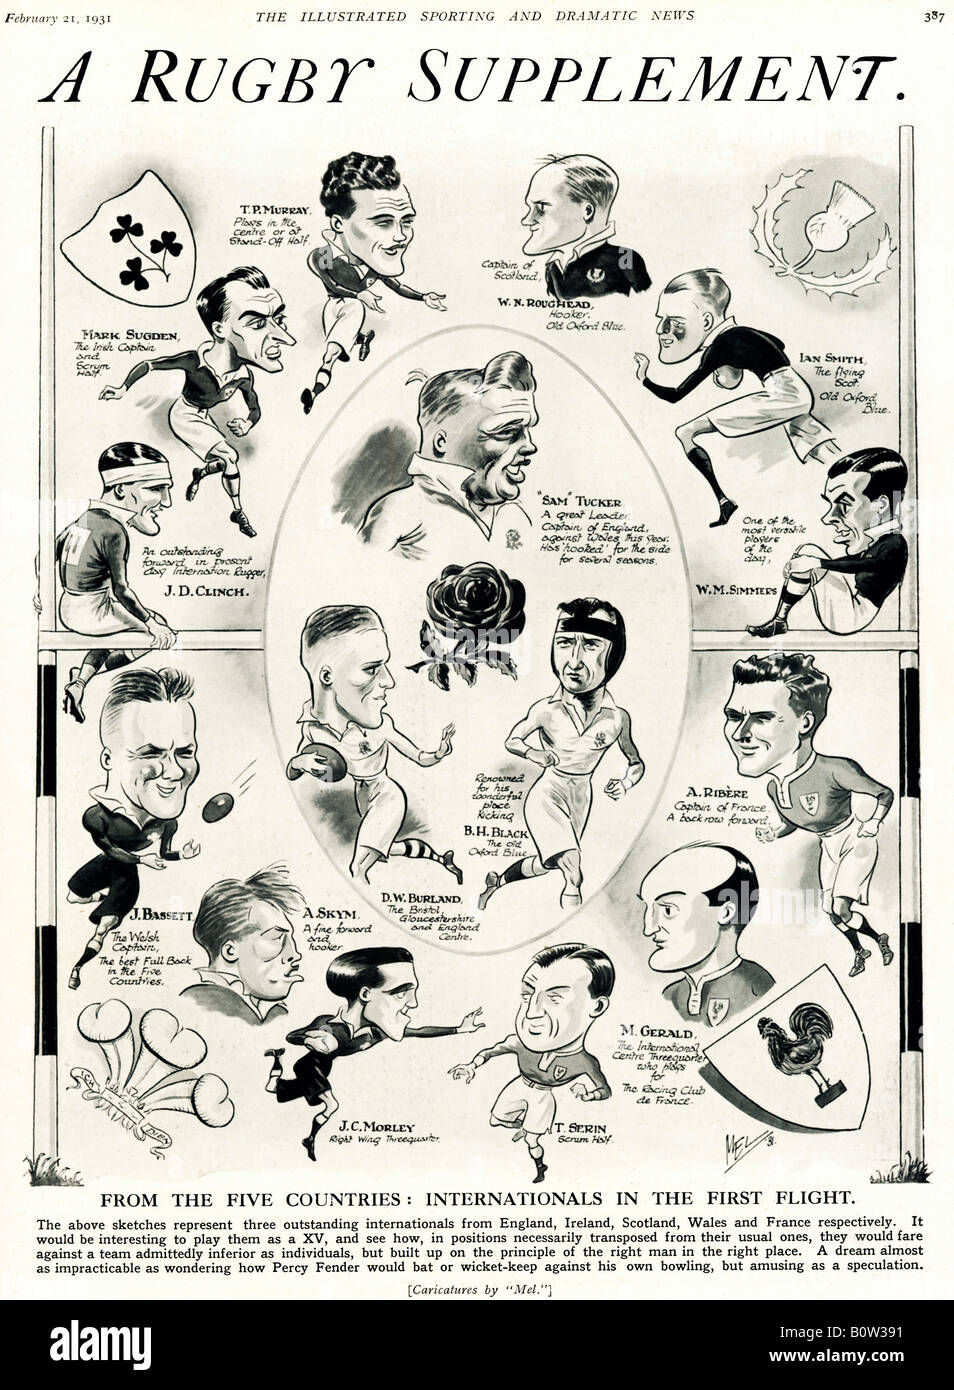 Supplément Rugby 1931 cartoon avec des caricatures de trois joueurs de rugby exceptionnelle de chacun des 5 Nations Banque D'Images